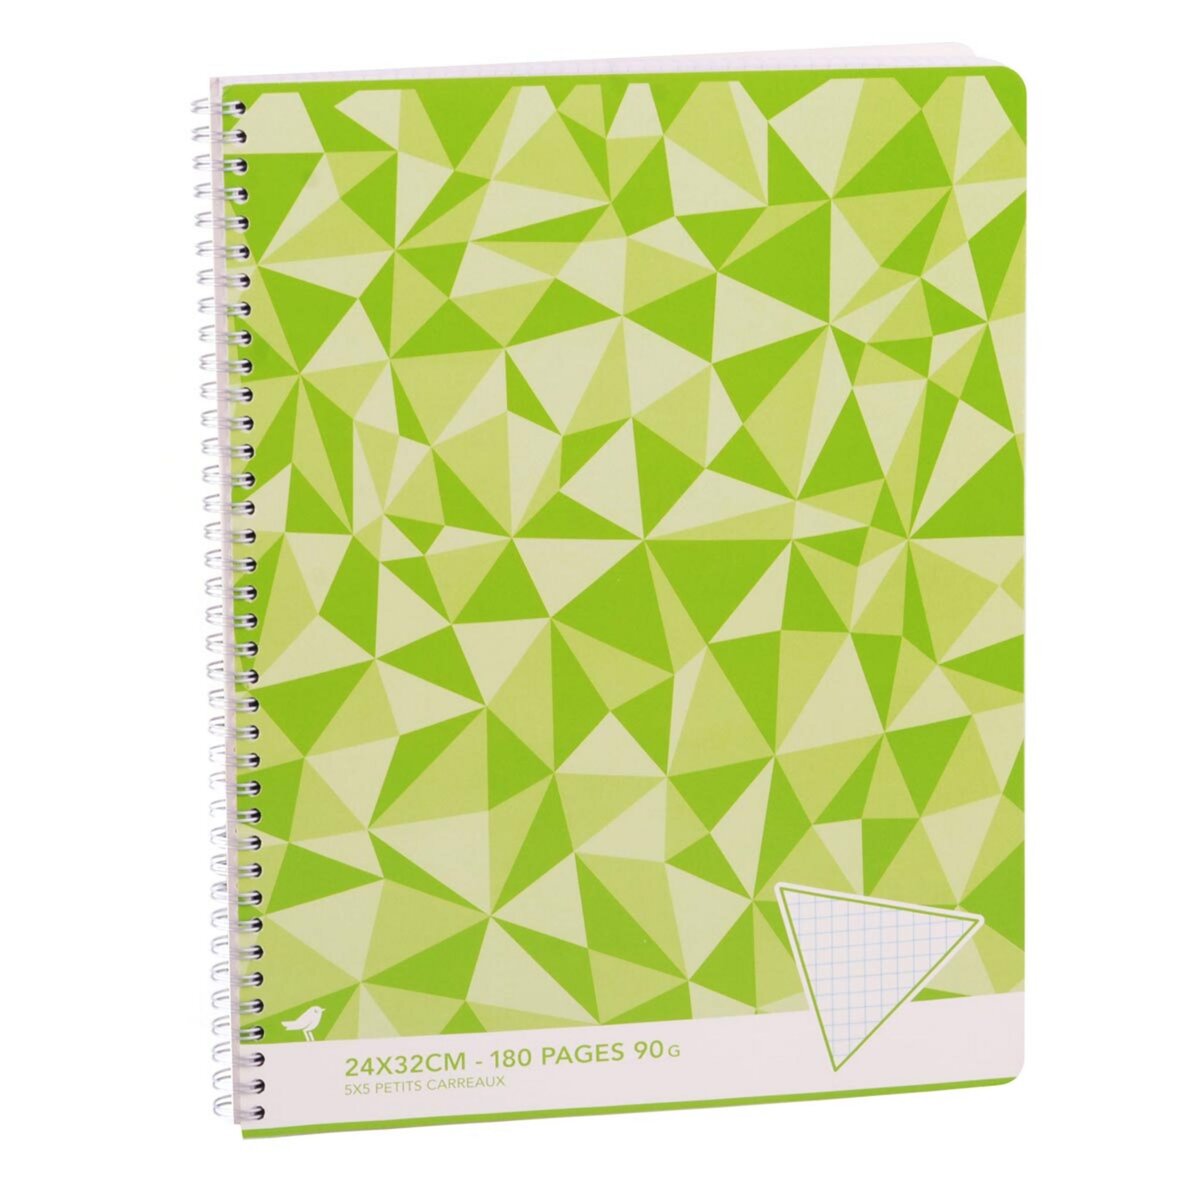 AUCHAN Cahier à spirale 24x32cm 180 pages petits carreaux 5x5 vert motif triangles